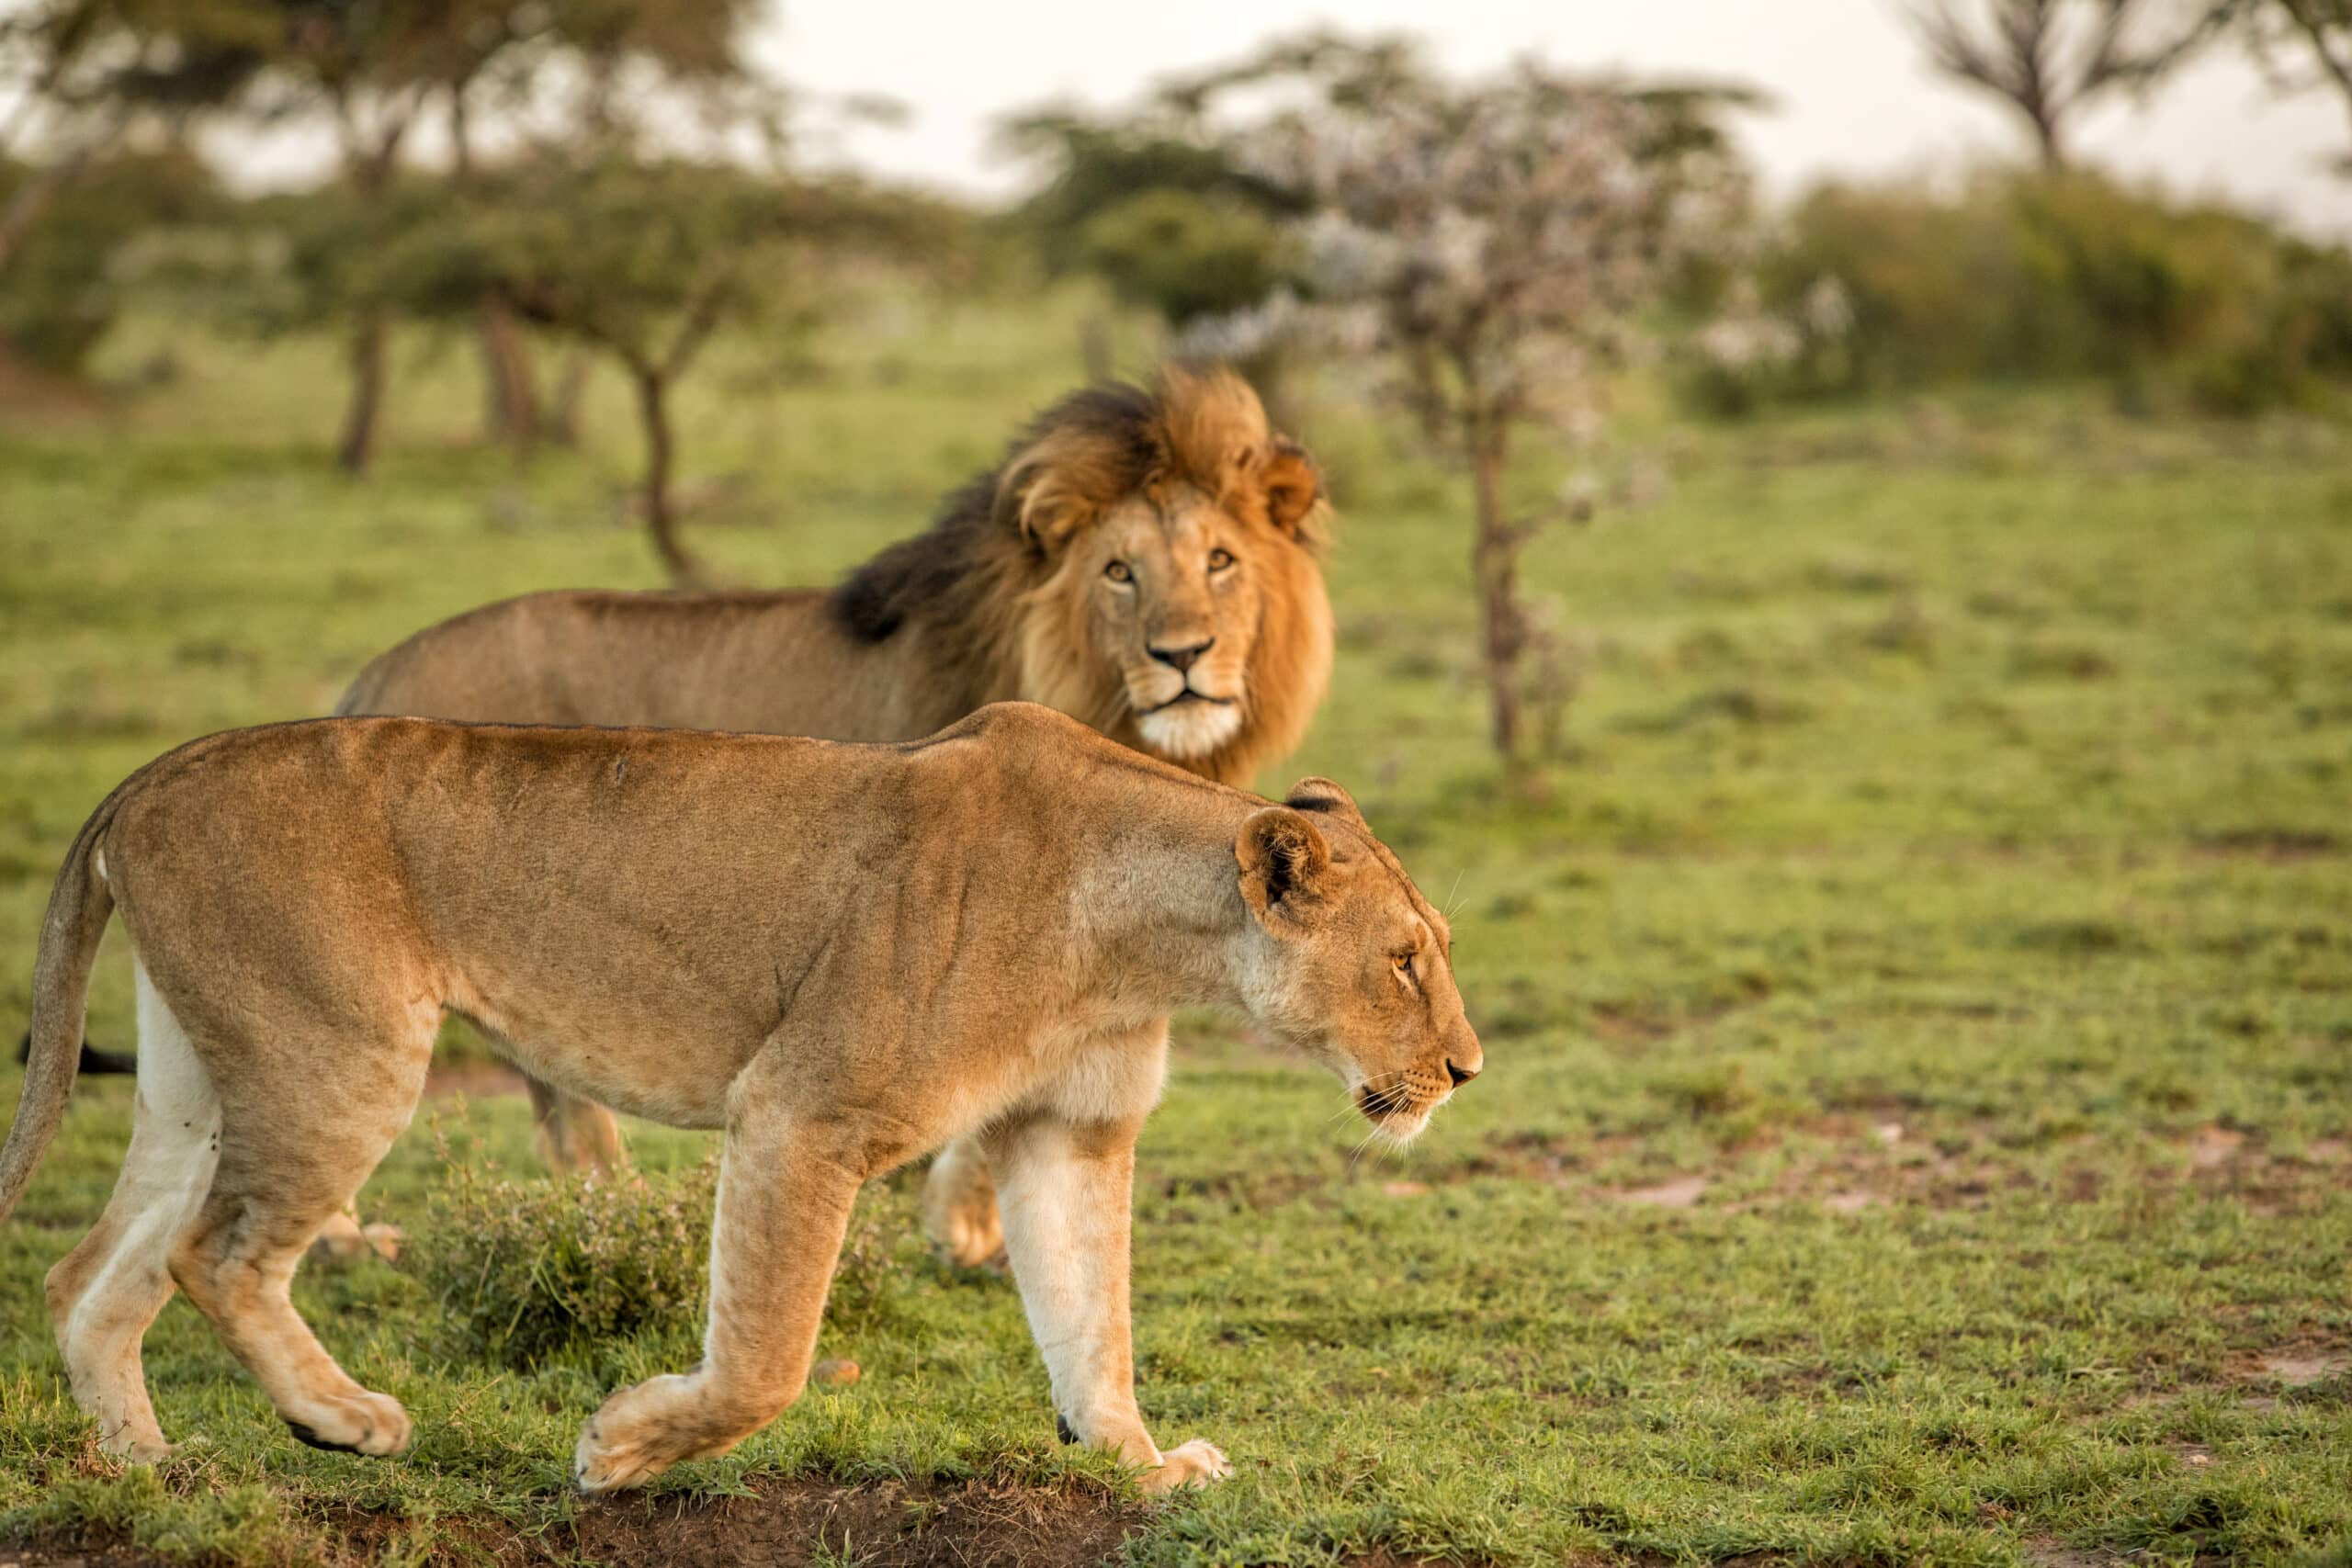 Zwei Löwen, ein Männchen und ein Weibchen, laufen durch eine grasbewachsene Savanne. Das Weibchen geht konzentriert voran, während das Männchen vor der Kulisse von Bäumen und sanftem Abendlicht dicht dahinter folgt. © Fotografie Tomas Rodriguez